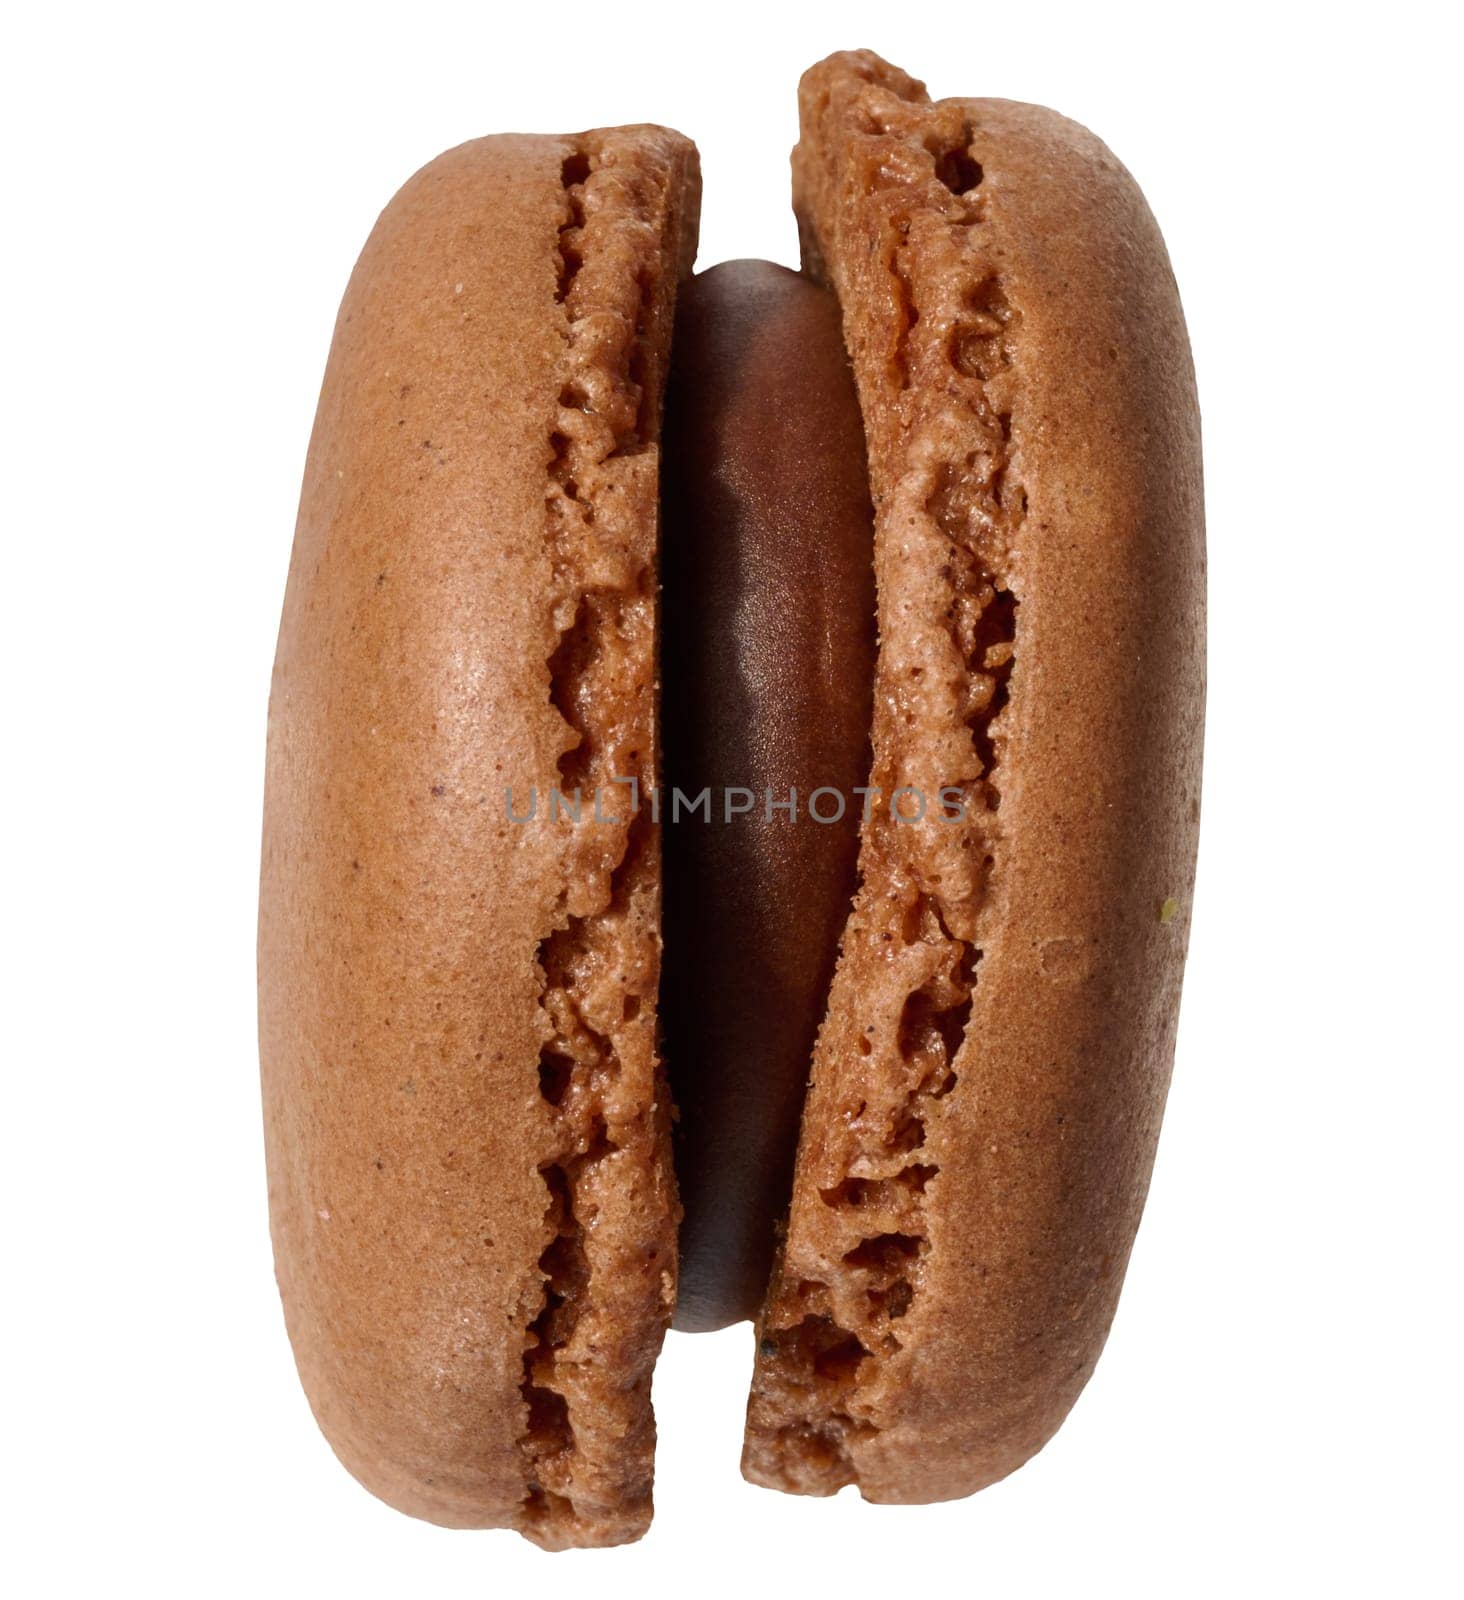 Chocolate macaron on isolated background by ndanko